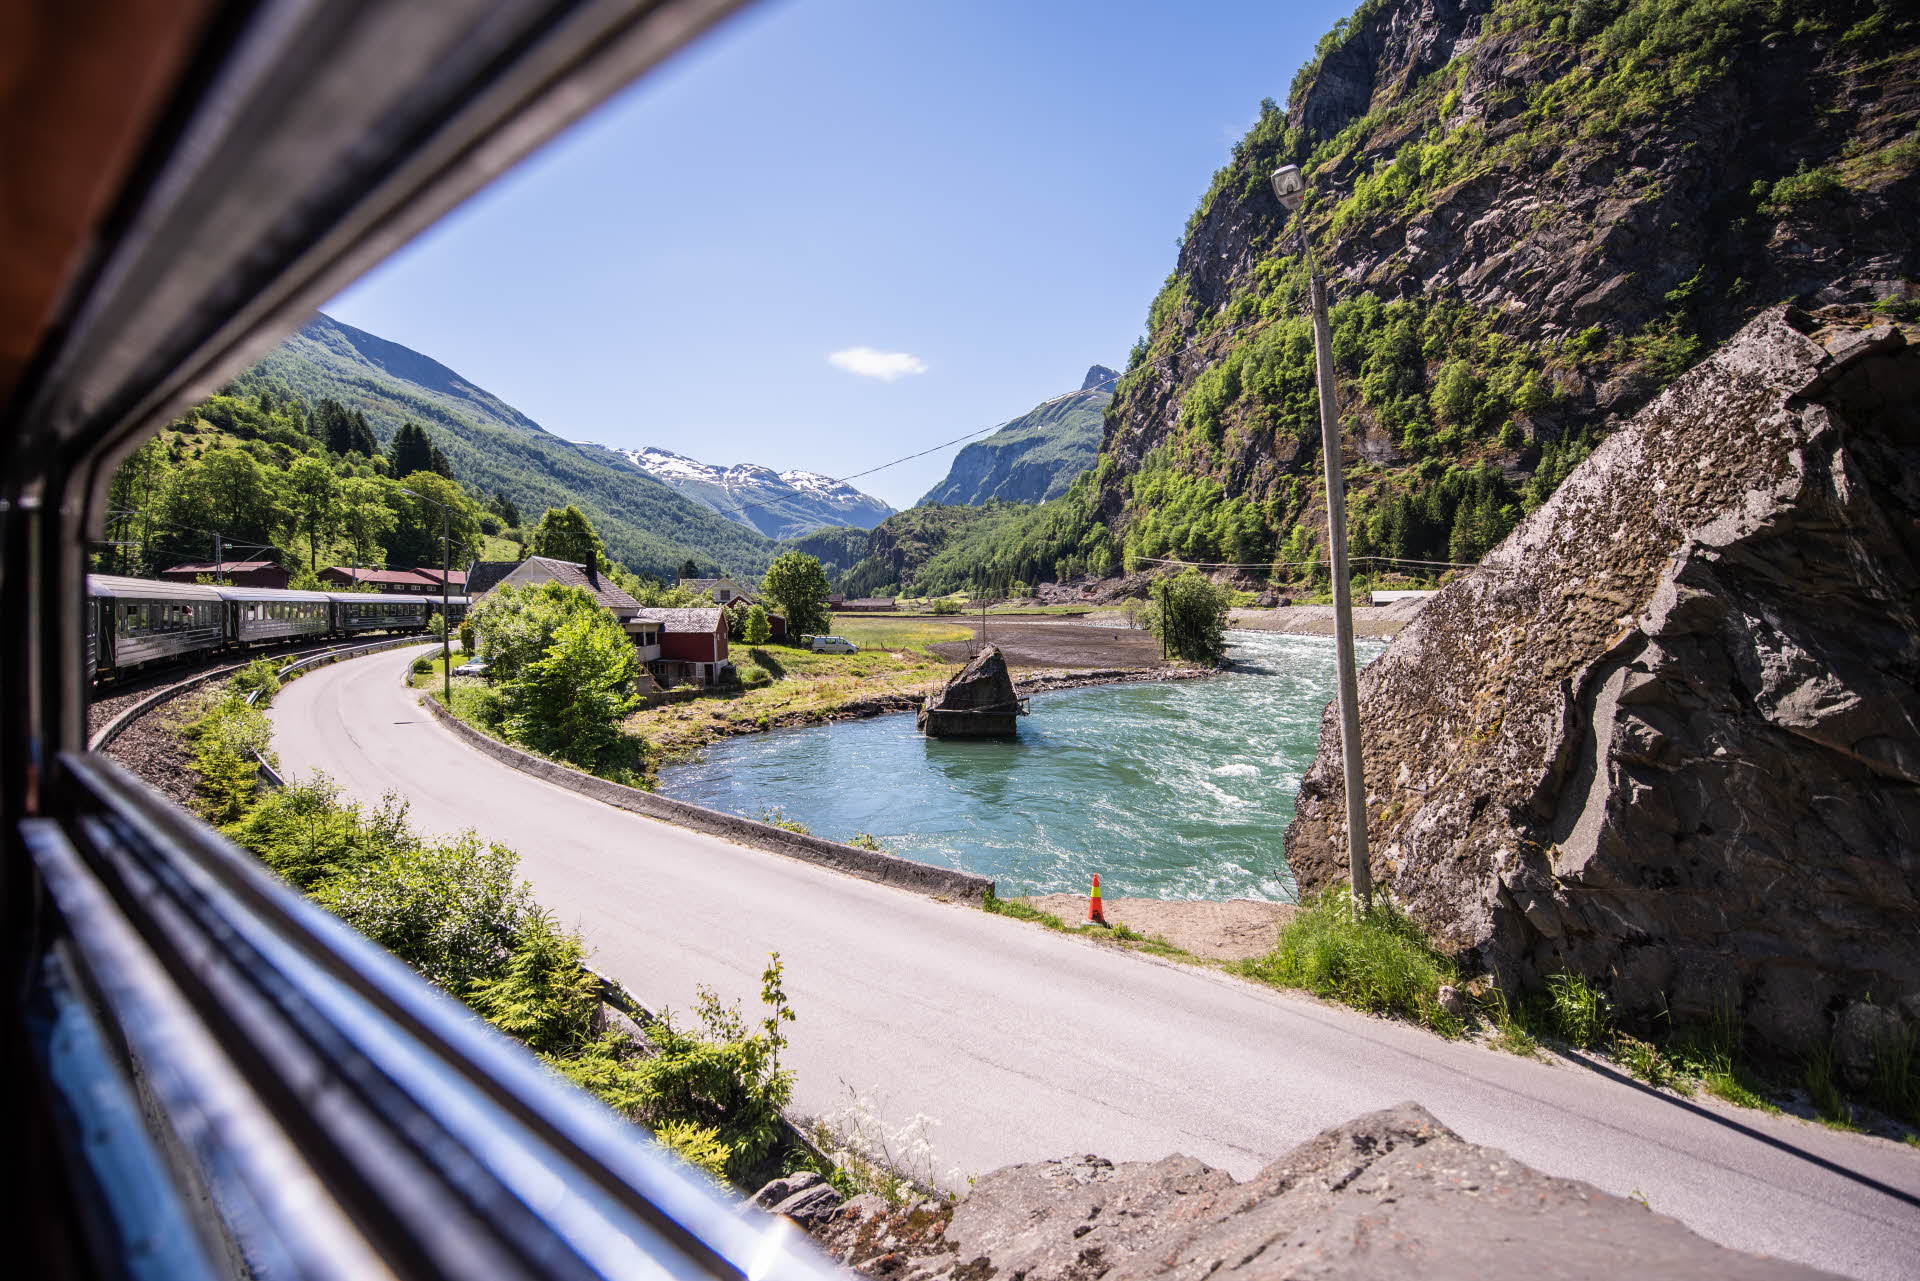 Vue depuis l’intérieur d’un wagon du train de Flåm, à travers la fenêtre ouverte où défile le paysage estival des rivières et des routes de la vallée de Flåm